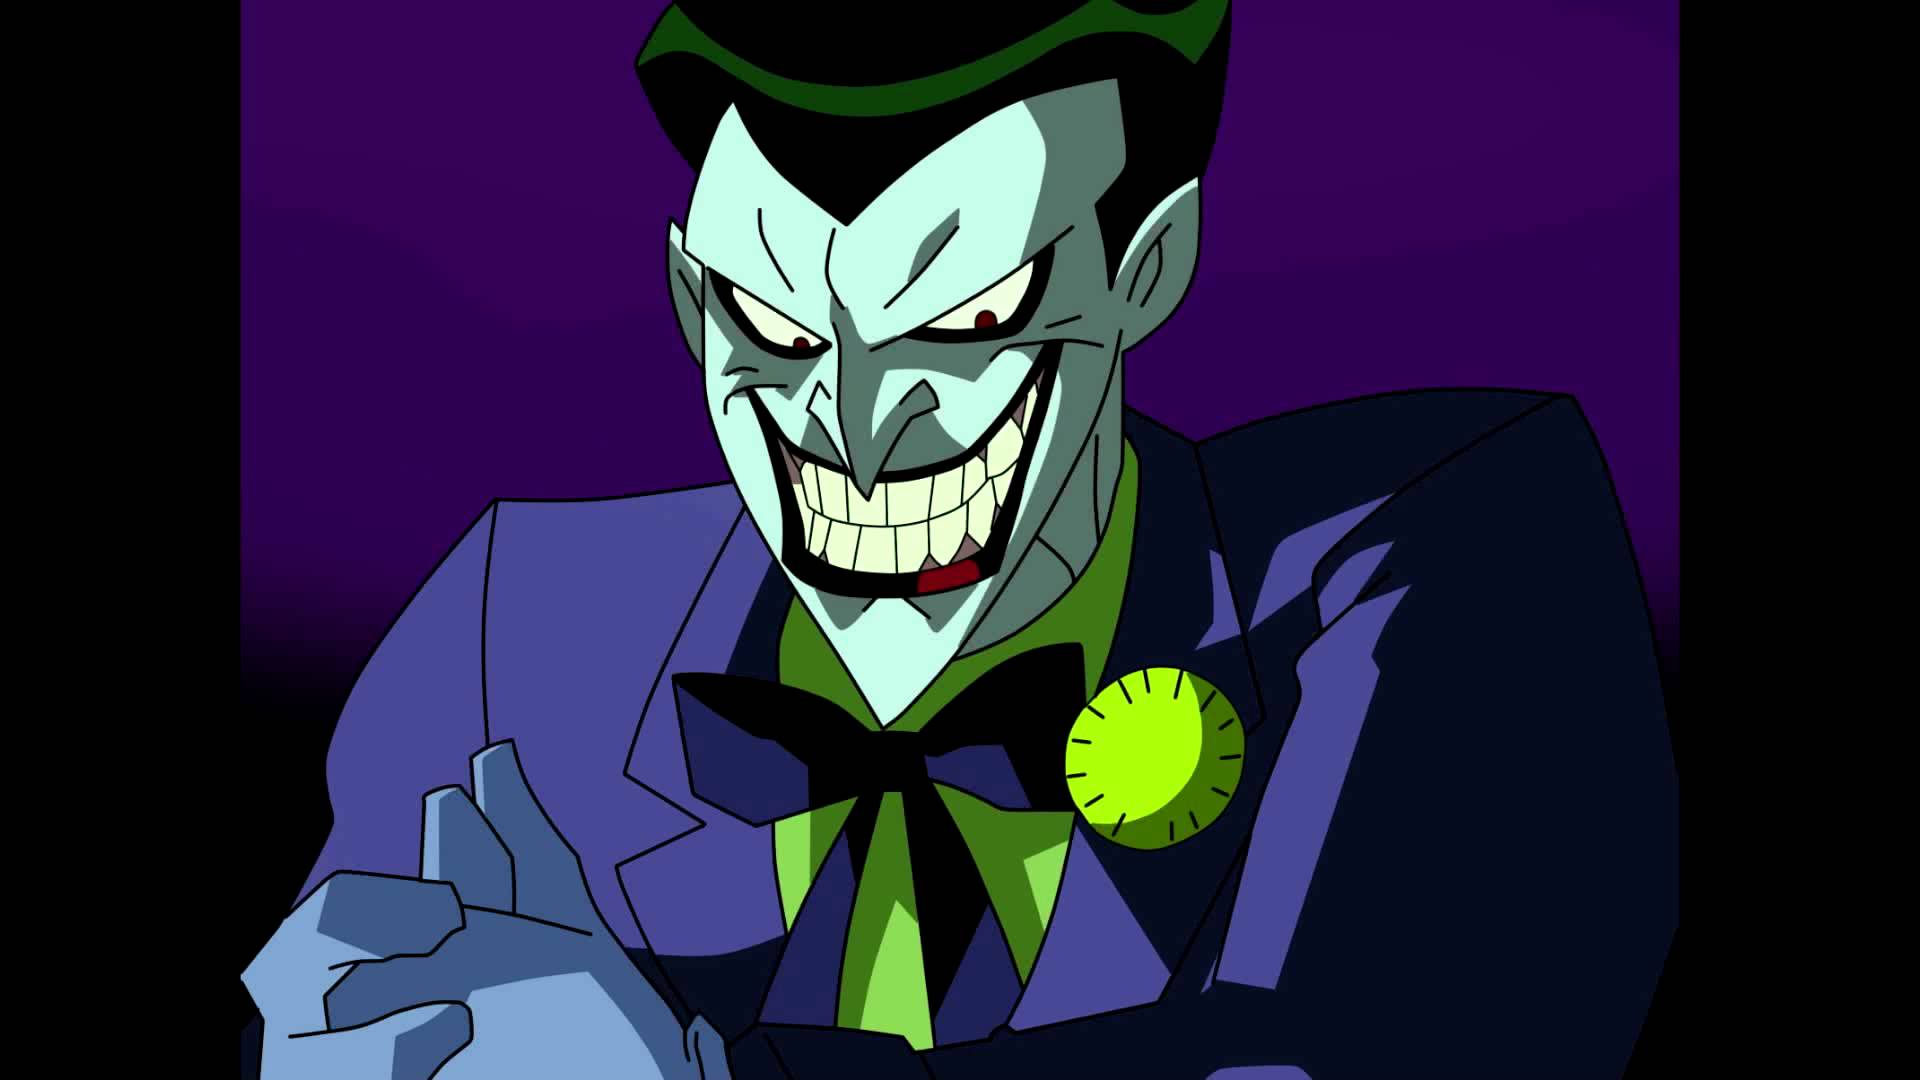 Joker: "Not a real clown?" Blank Meme Template